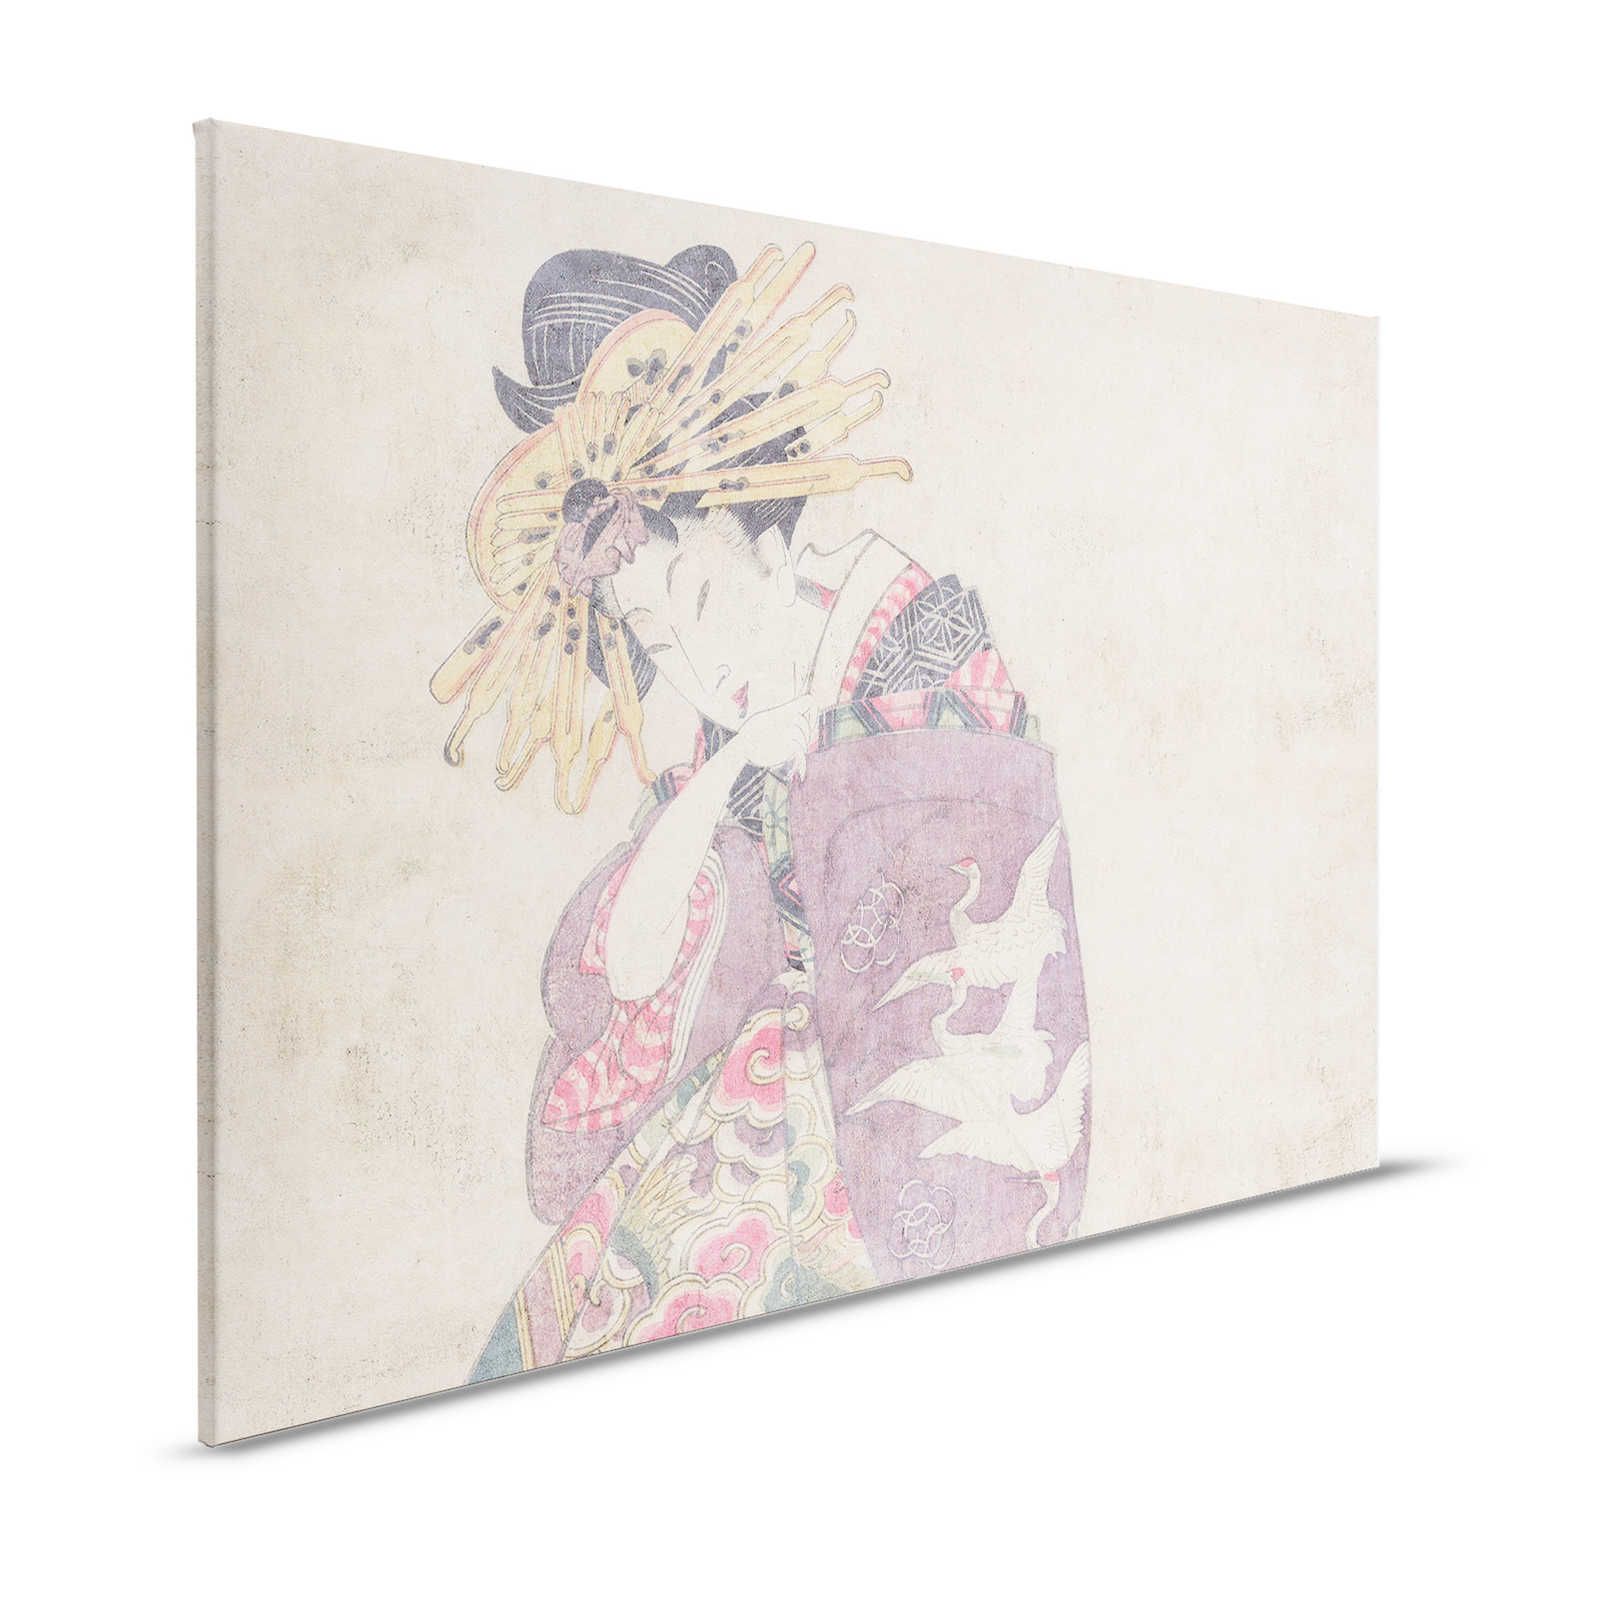 Osaka 1 - Kunstprint canvas foto Aziatische Dekor in vintage stijl - 1,20 m x 0,80 m
